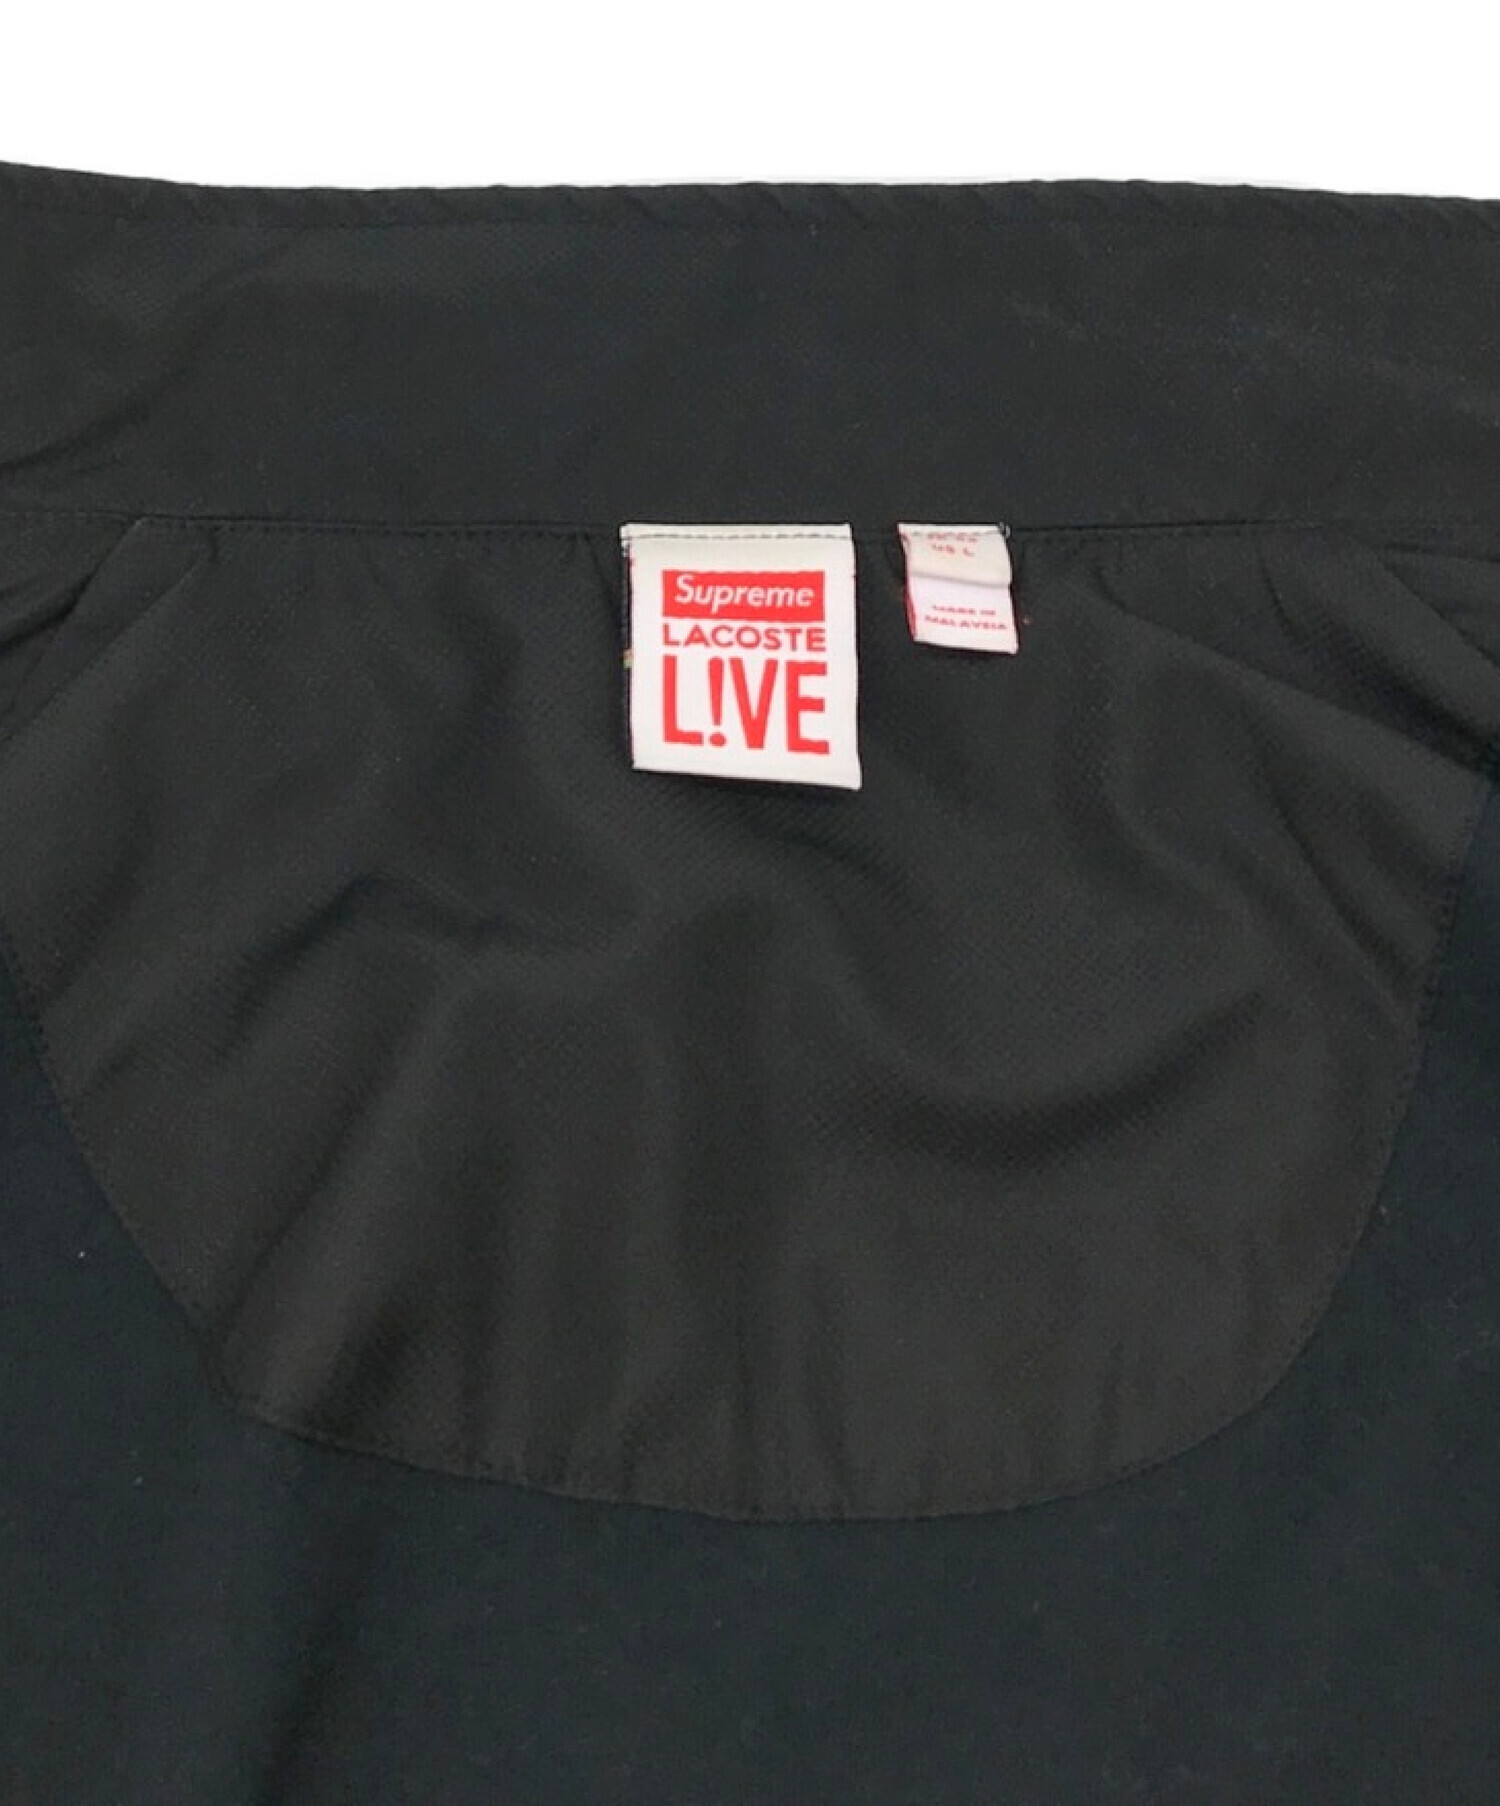 SUPREME (シュプリーム) LACOSTE LIVE (ラコステライブ) 17SS Track Jacket ラコステコラボトラックジャケット  ブラック サイズ:L